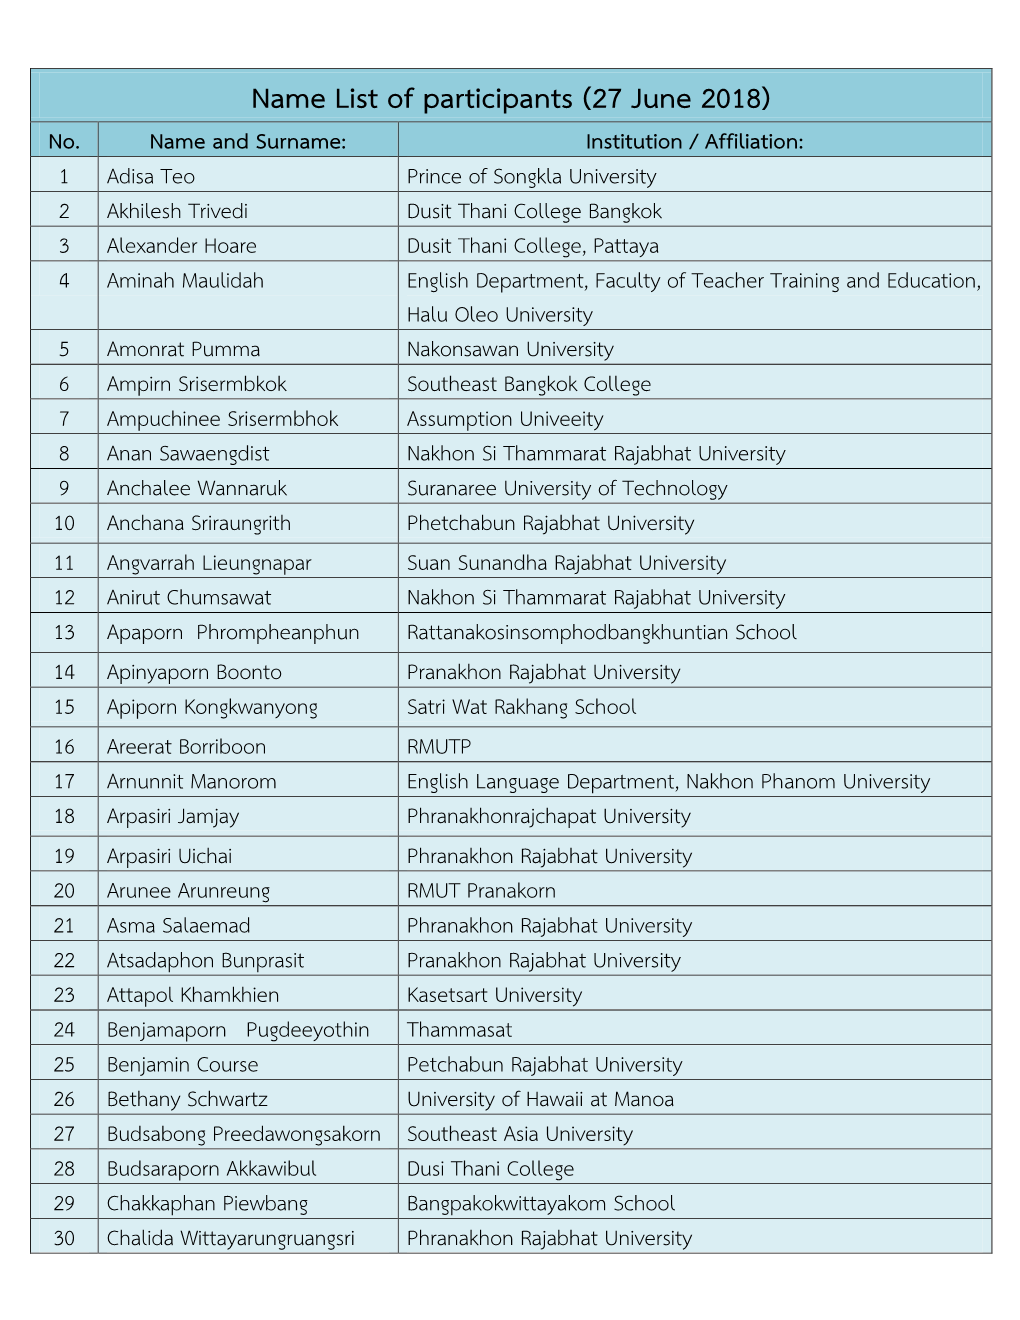 Name List of Participants (27 June 2018) No